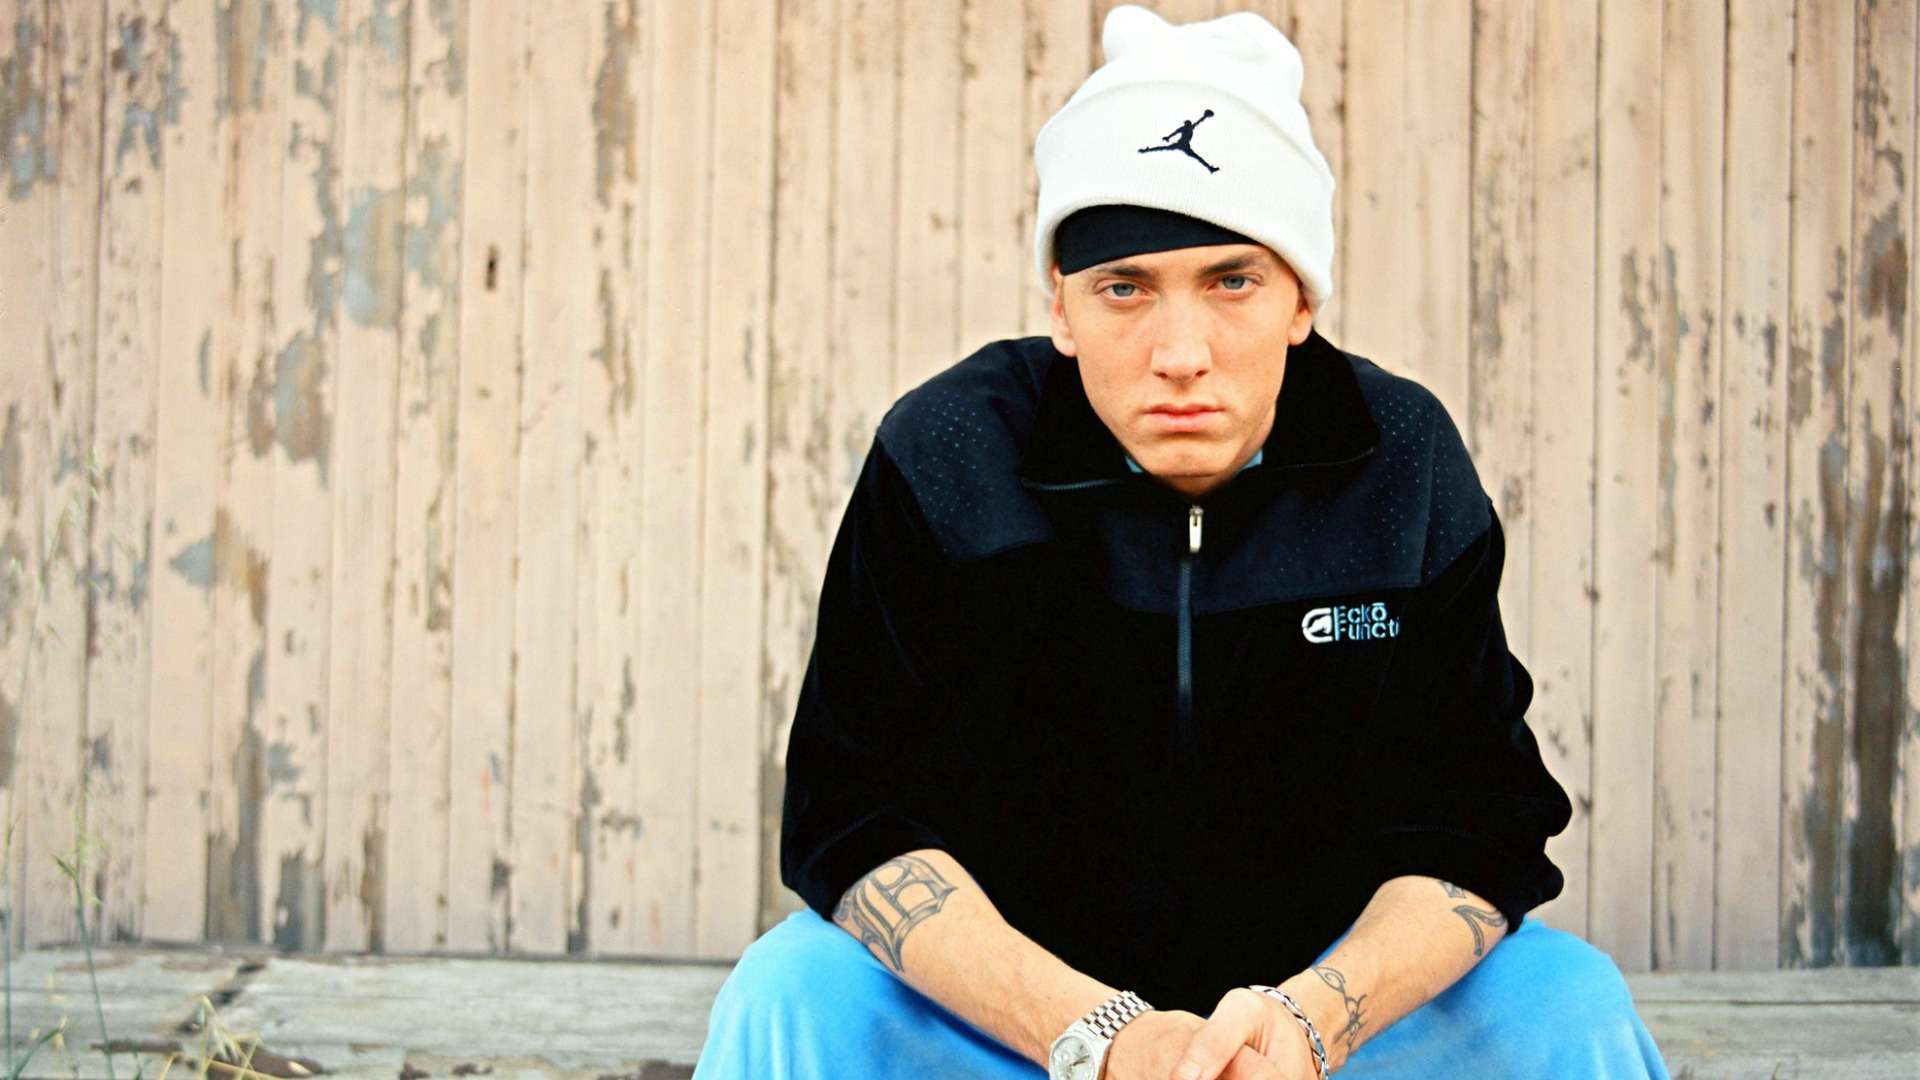 Eminem Wallpaper For Desktop Best Collection Free Download